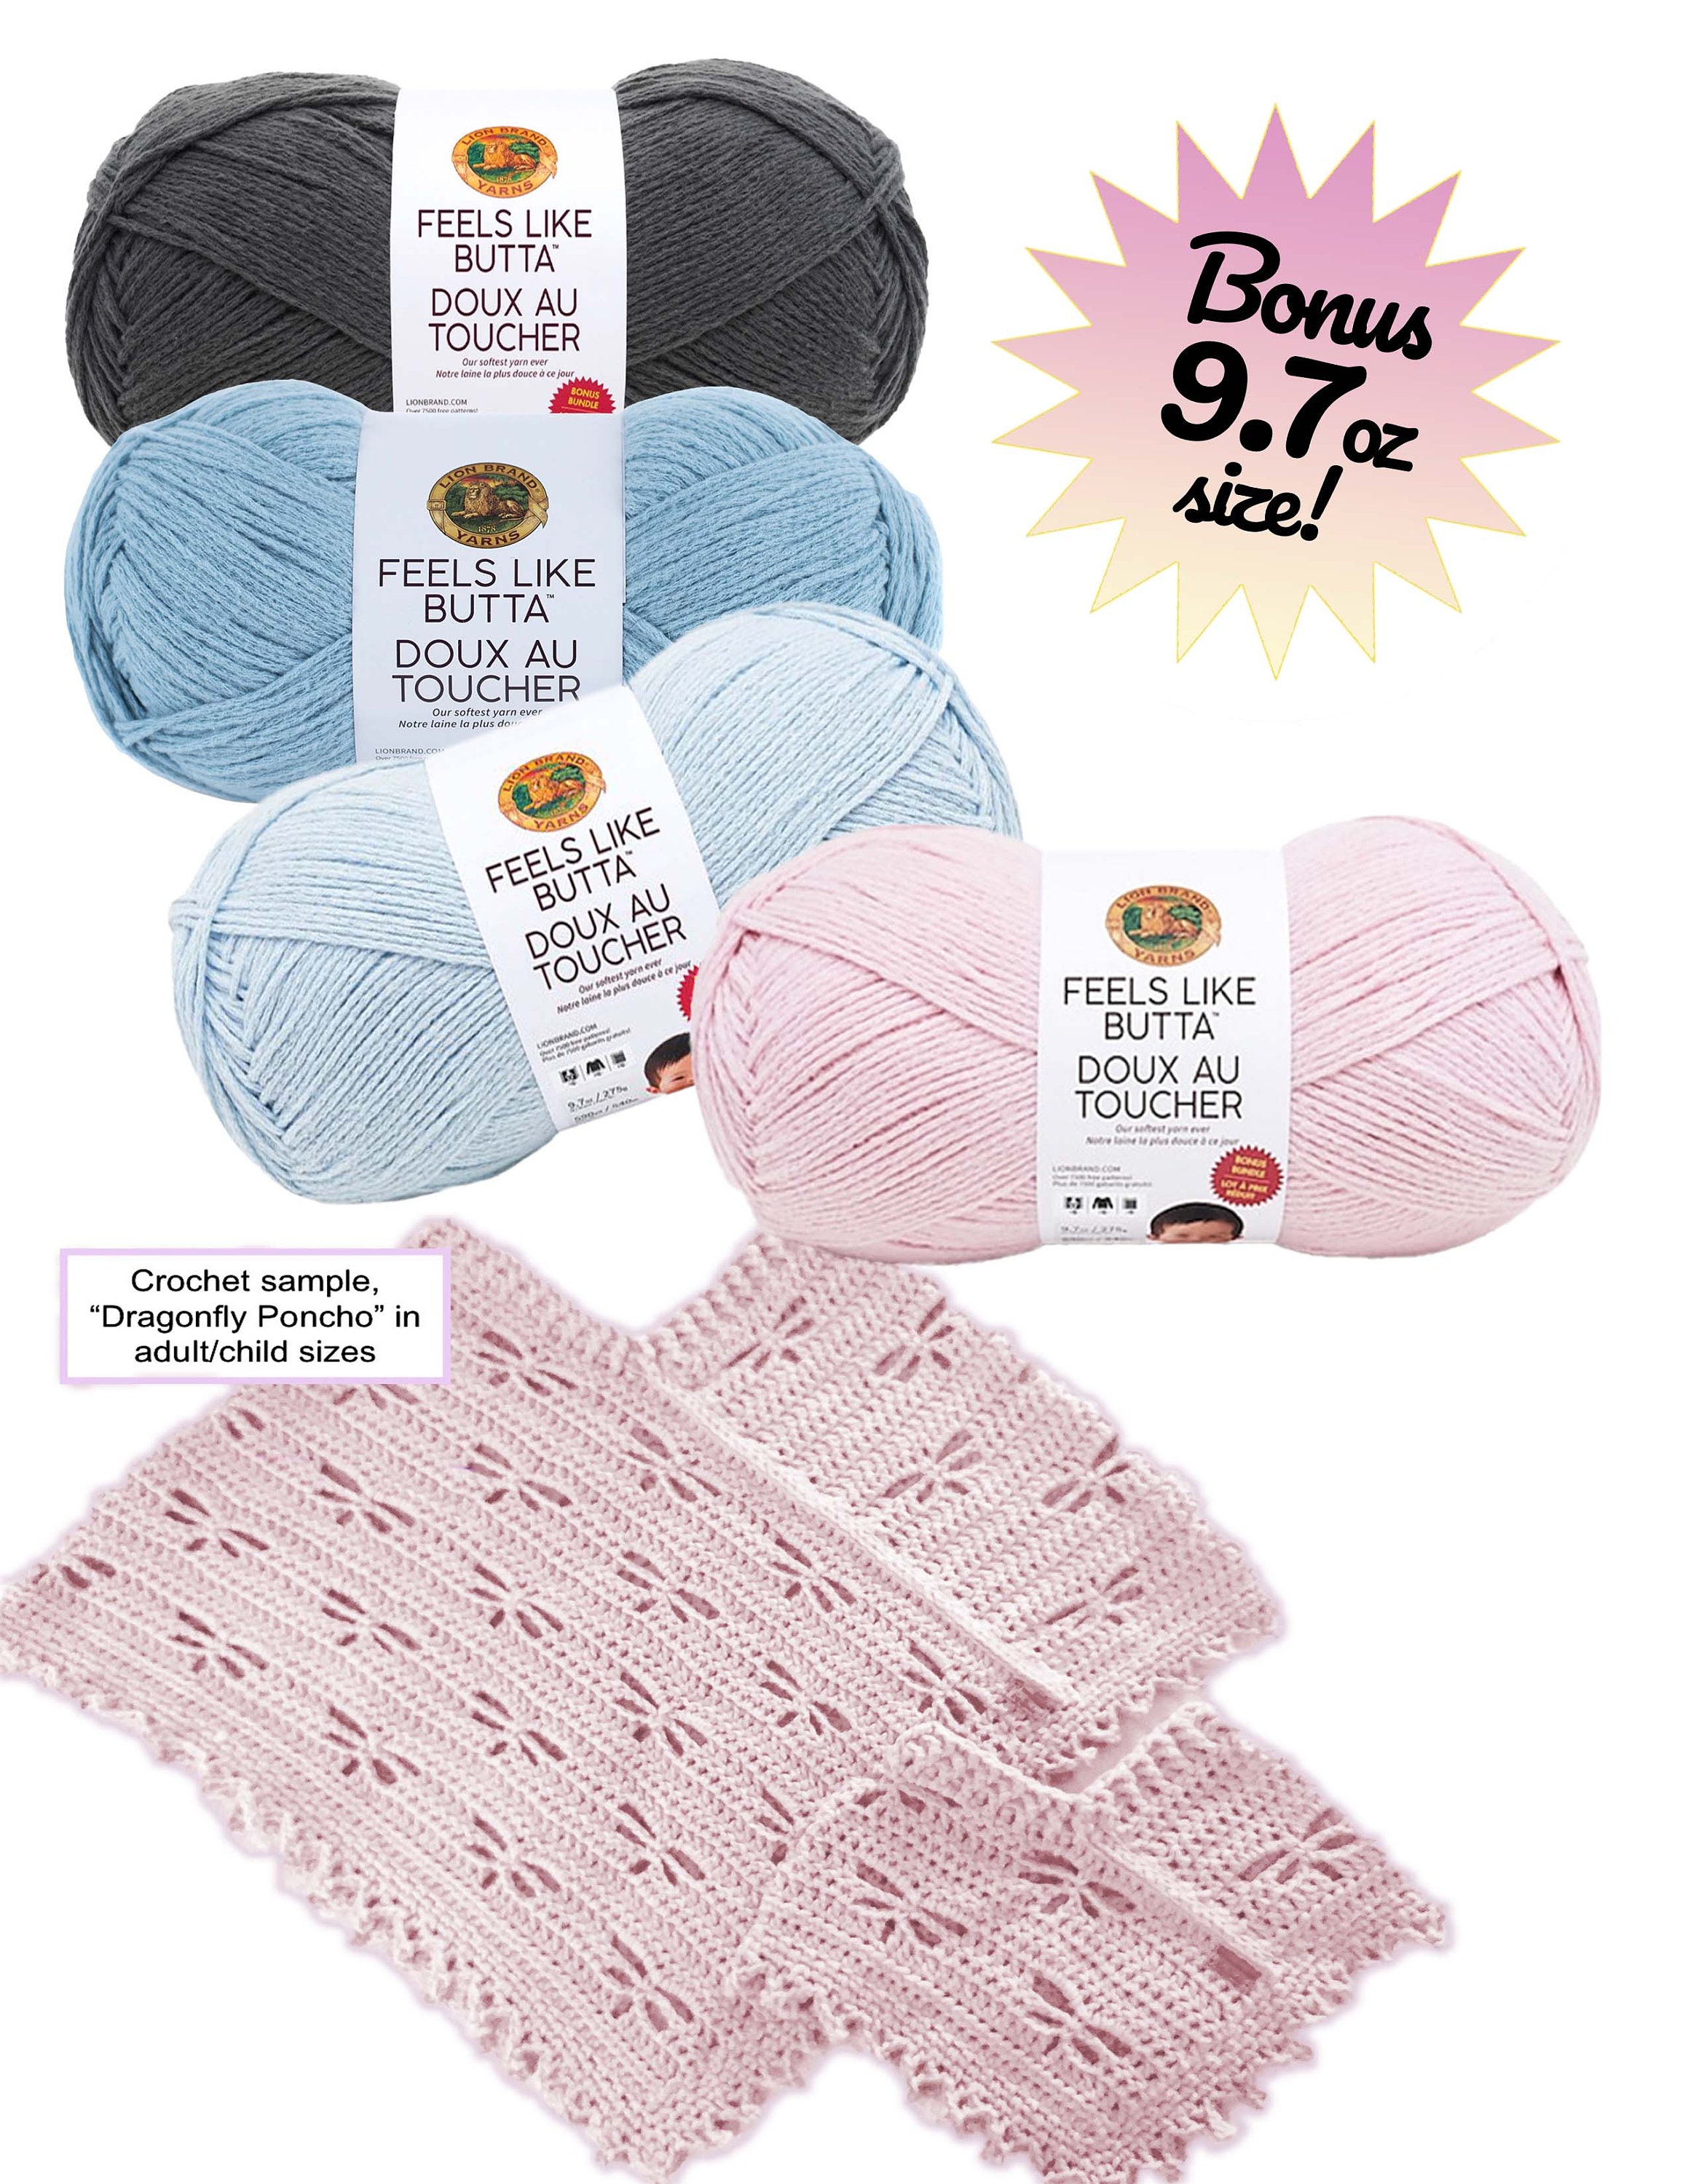 Lion brand Yarn, Feels like butta Yarn Reviews Crochet